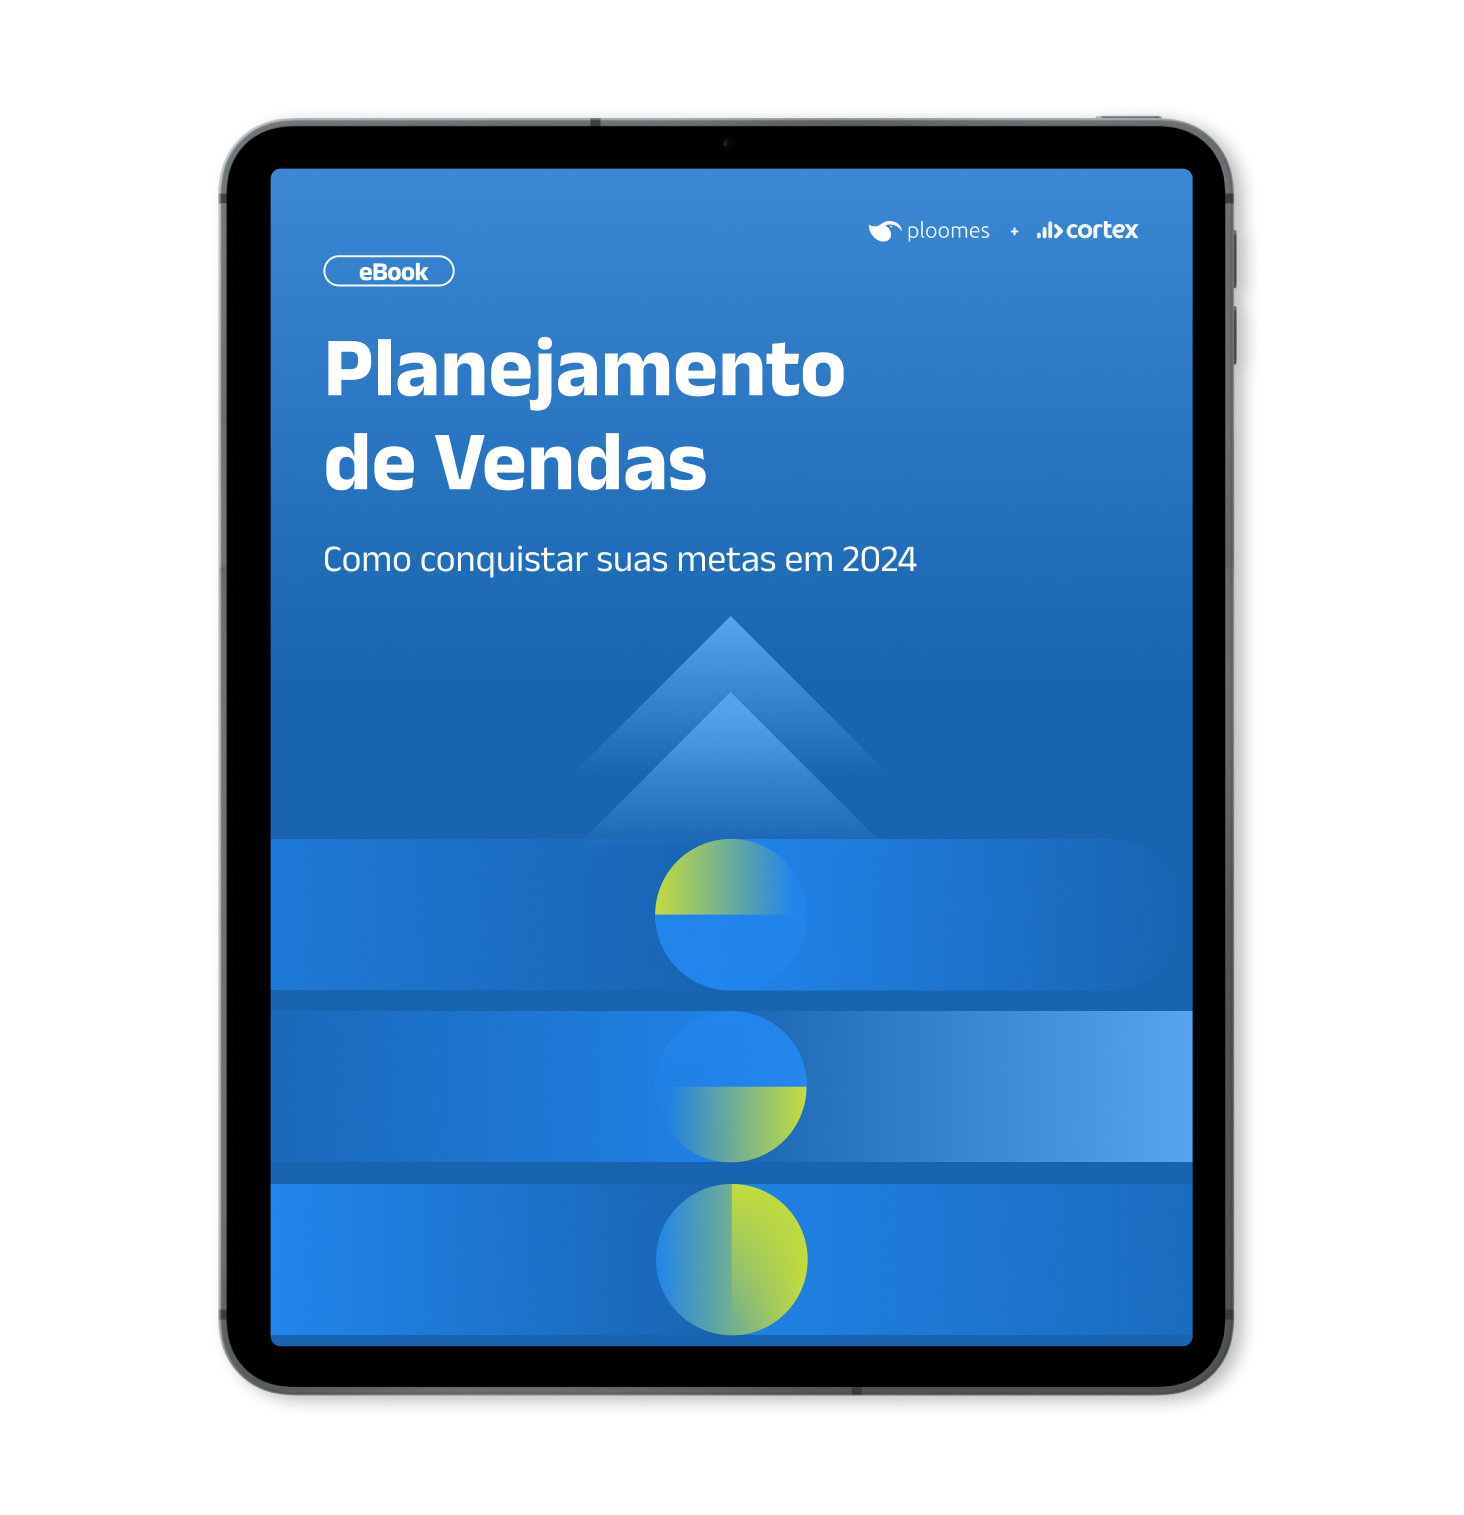 Mockup de Tablet com capa do Ebook - Planejamento de Vendas - Como conquistar suas metas em 2024